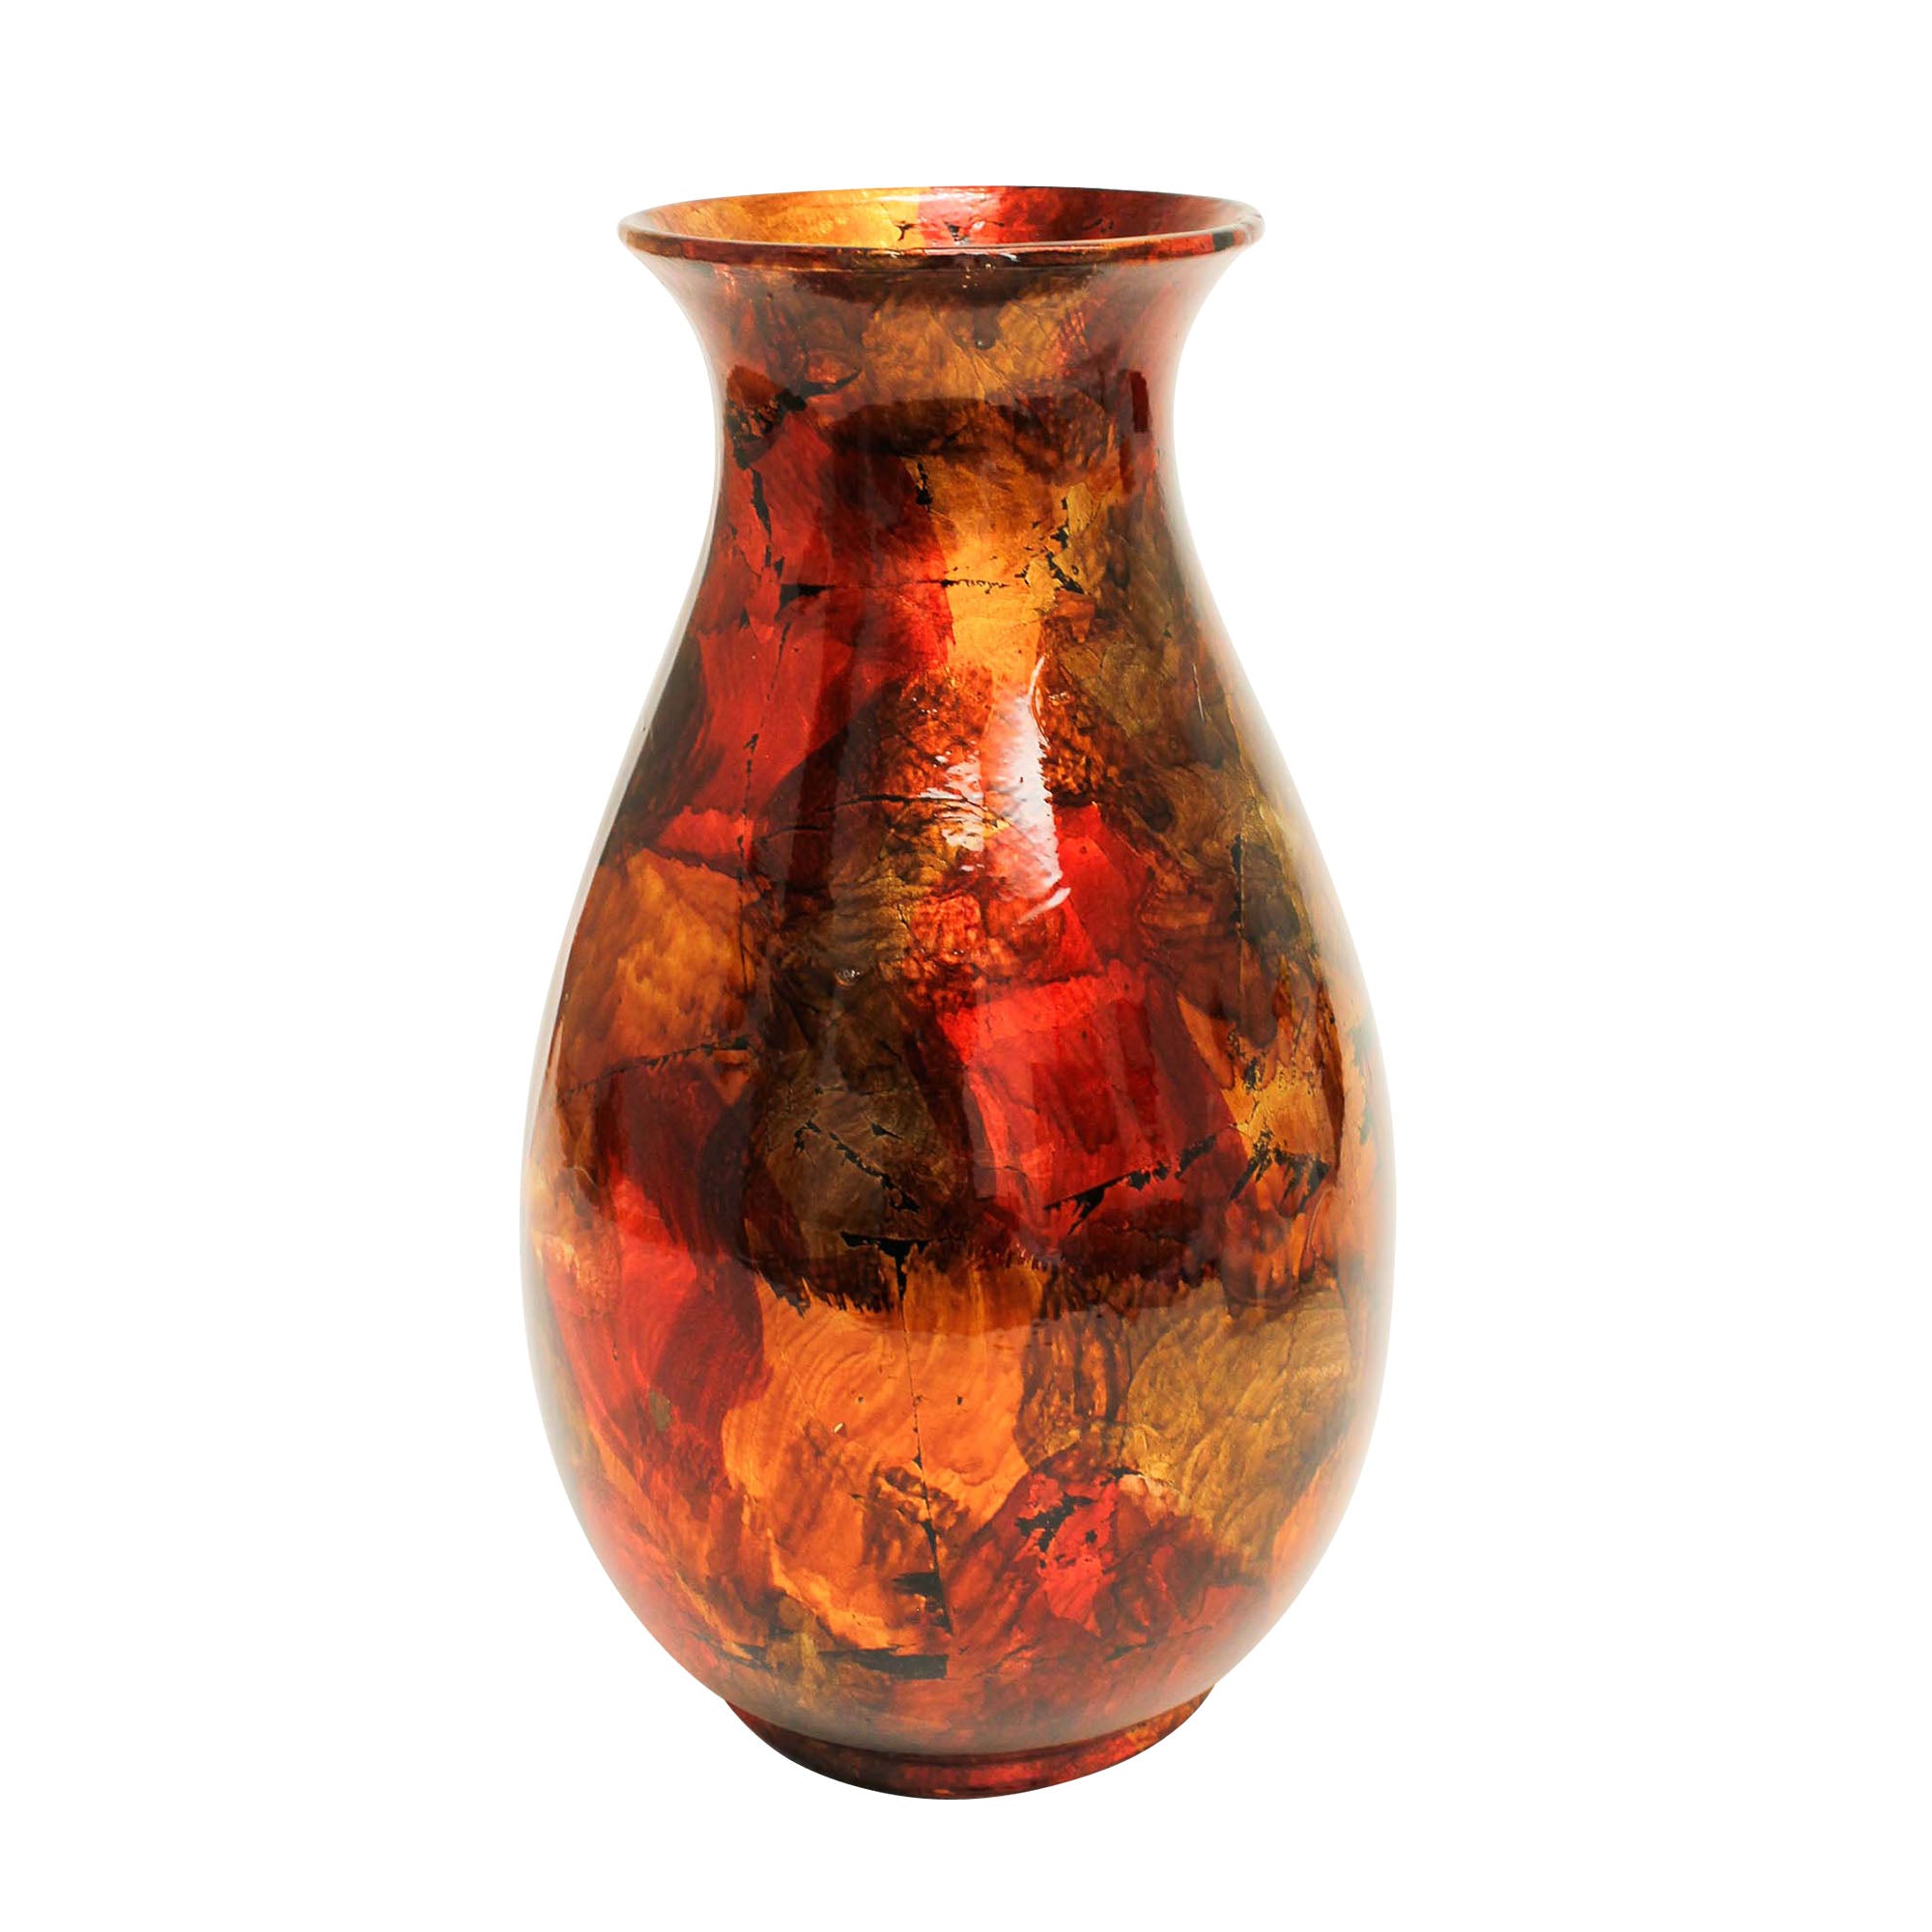 Mottle - 'Red Gold Vase' 37cm